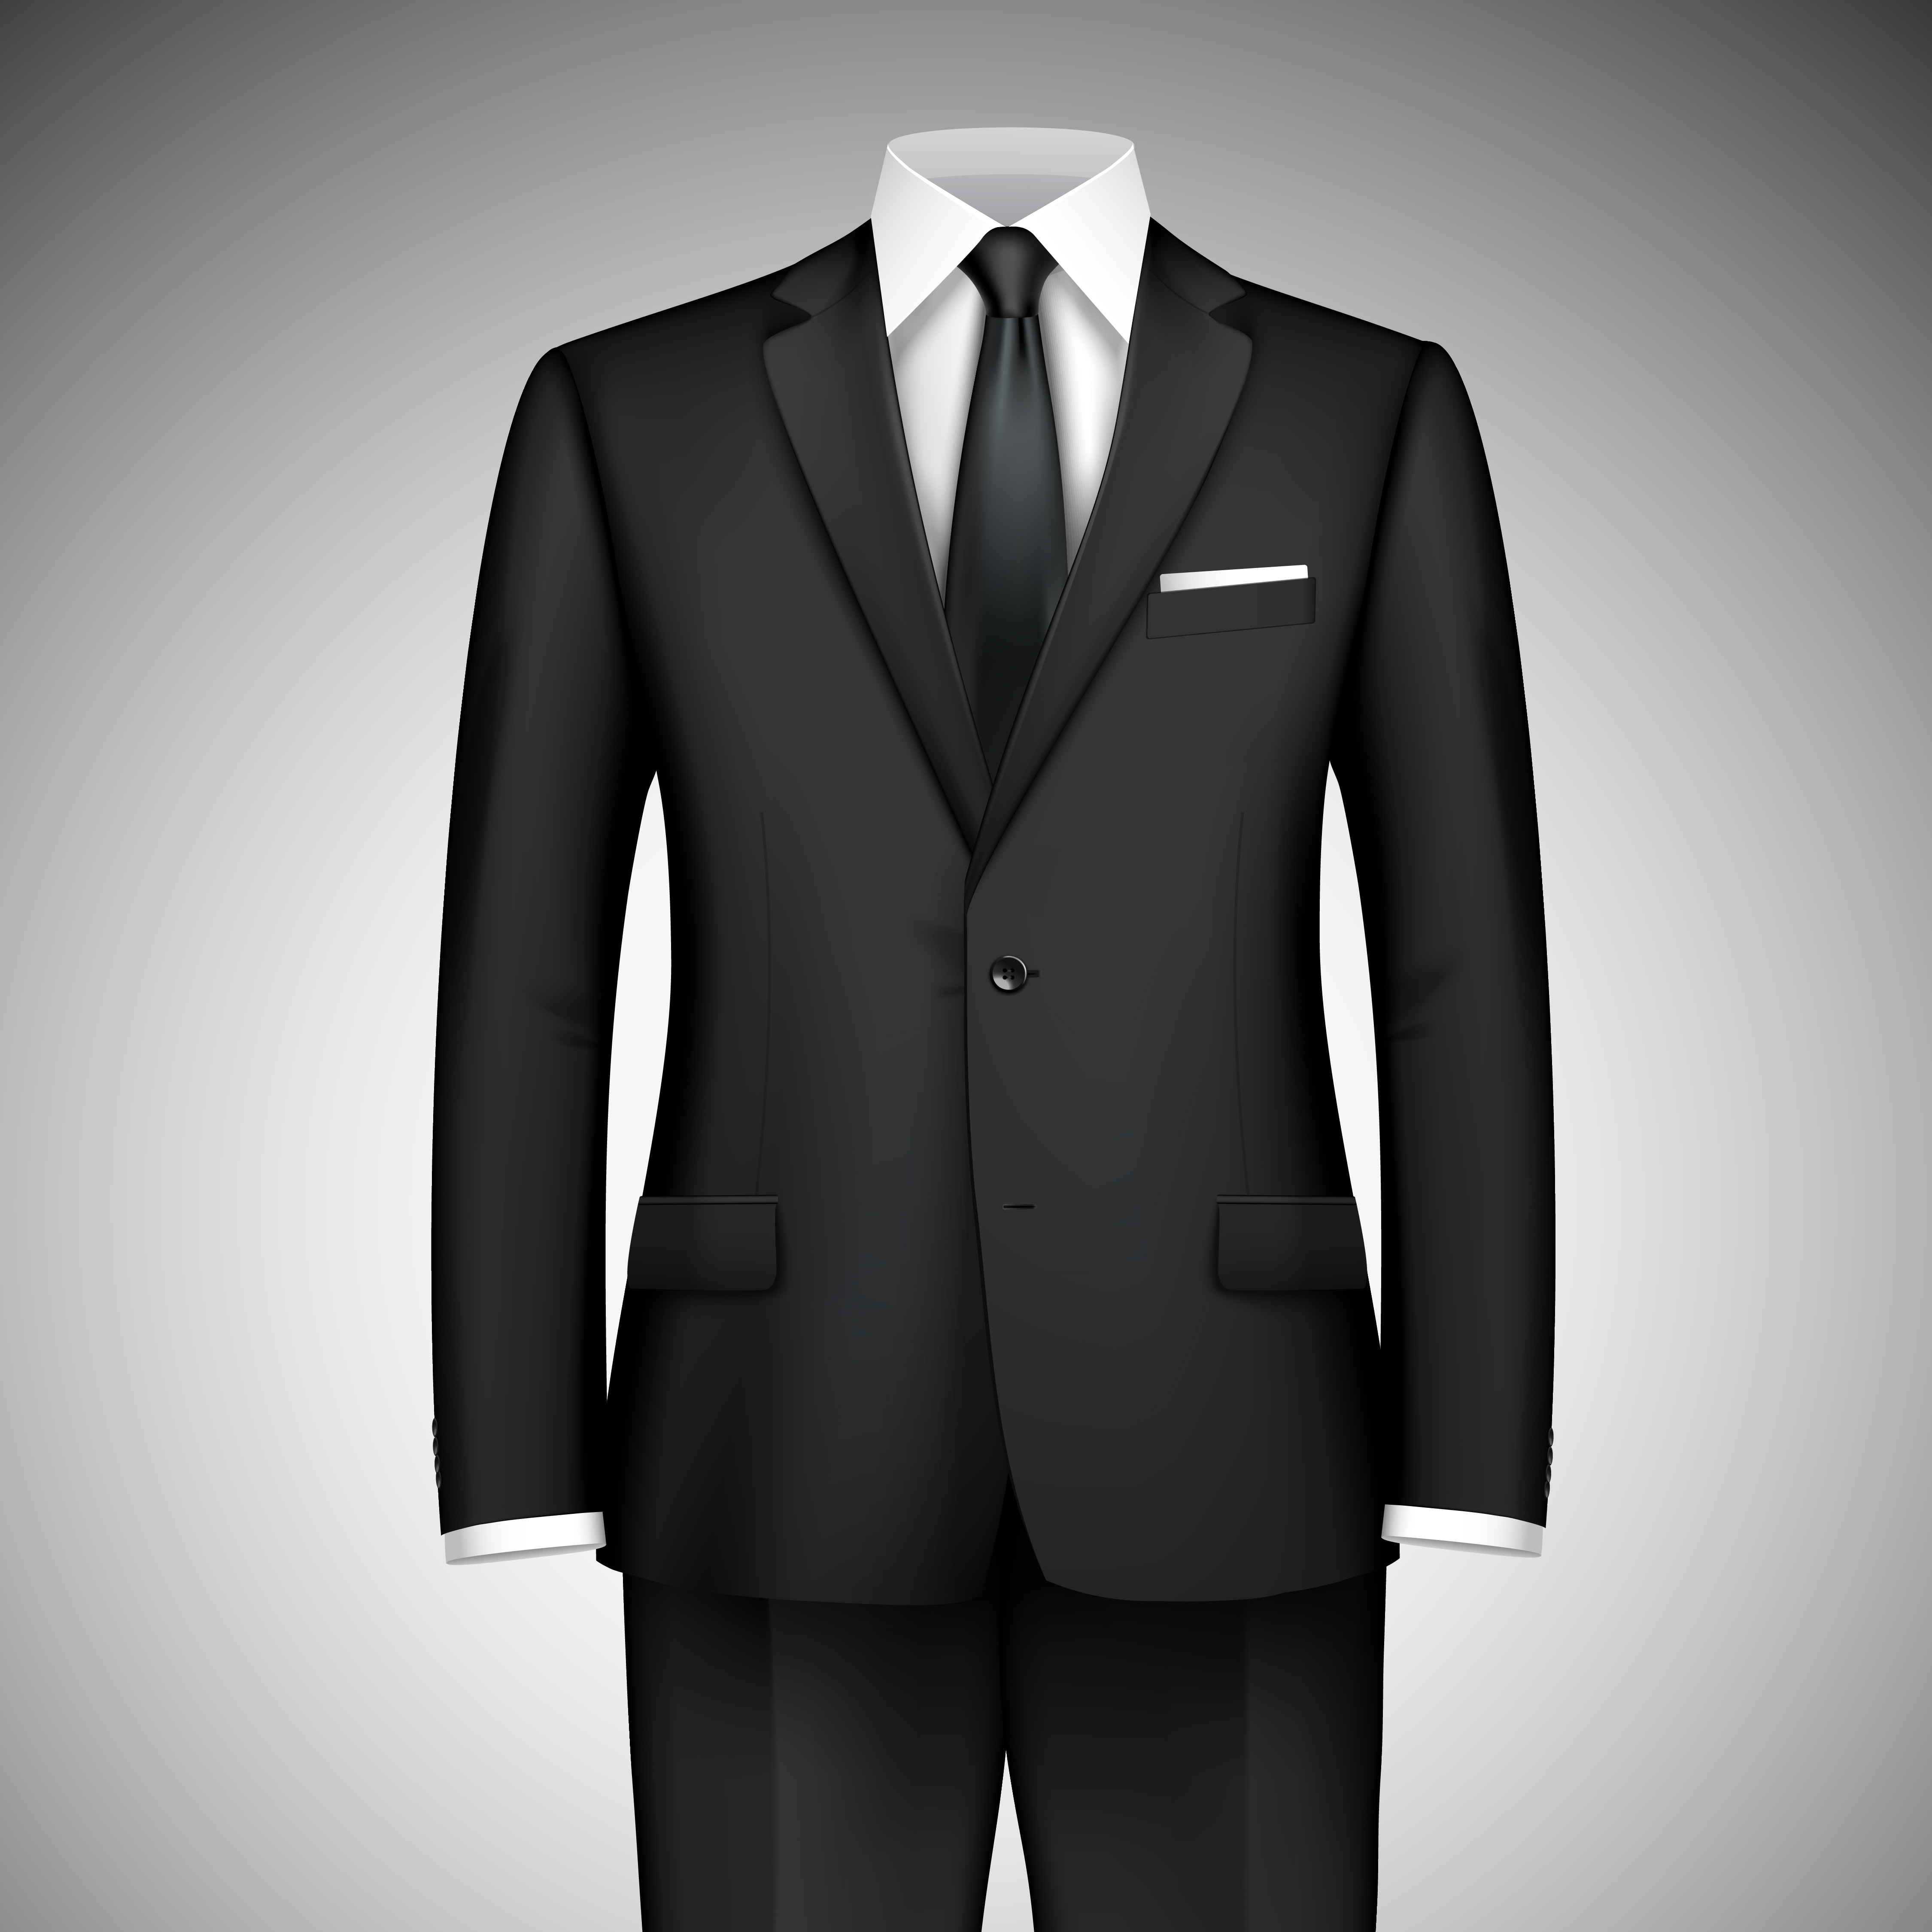 Businessman suit  Download Free Vectors  Clipart Graphics 